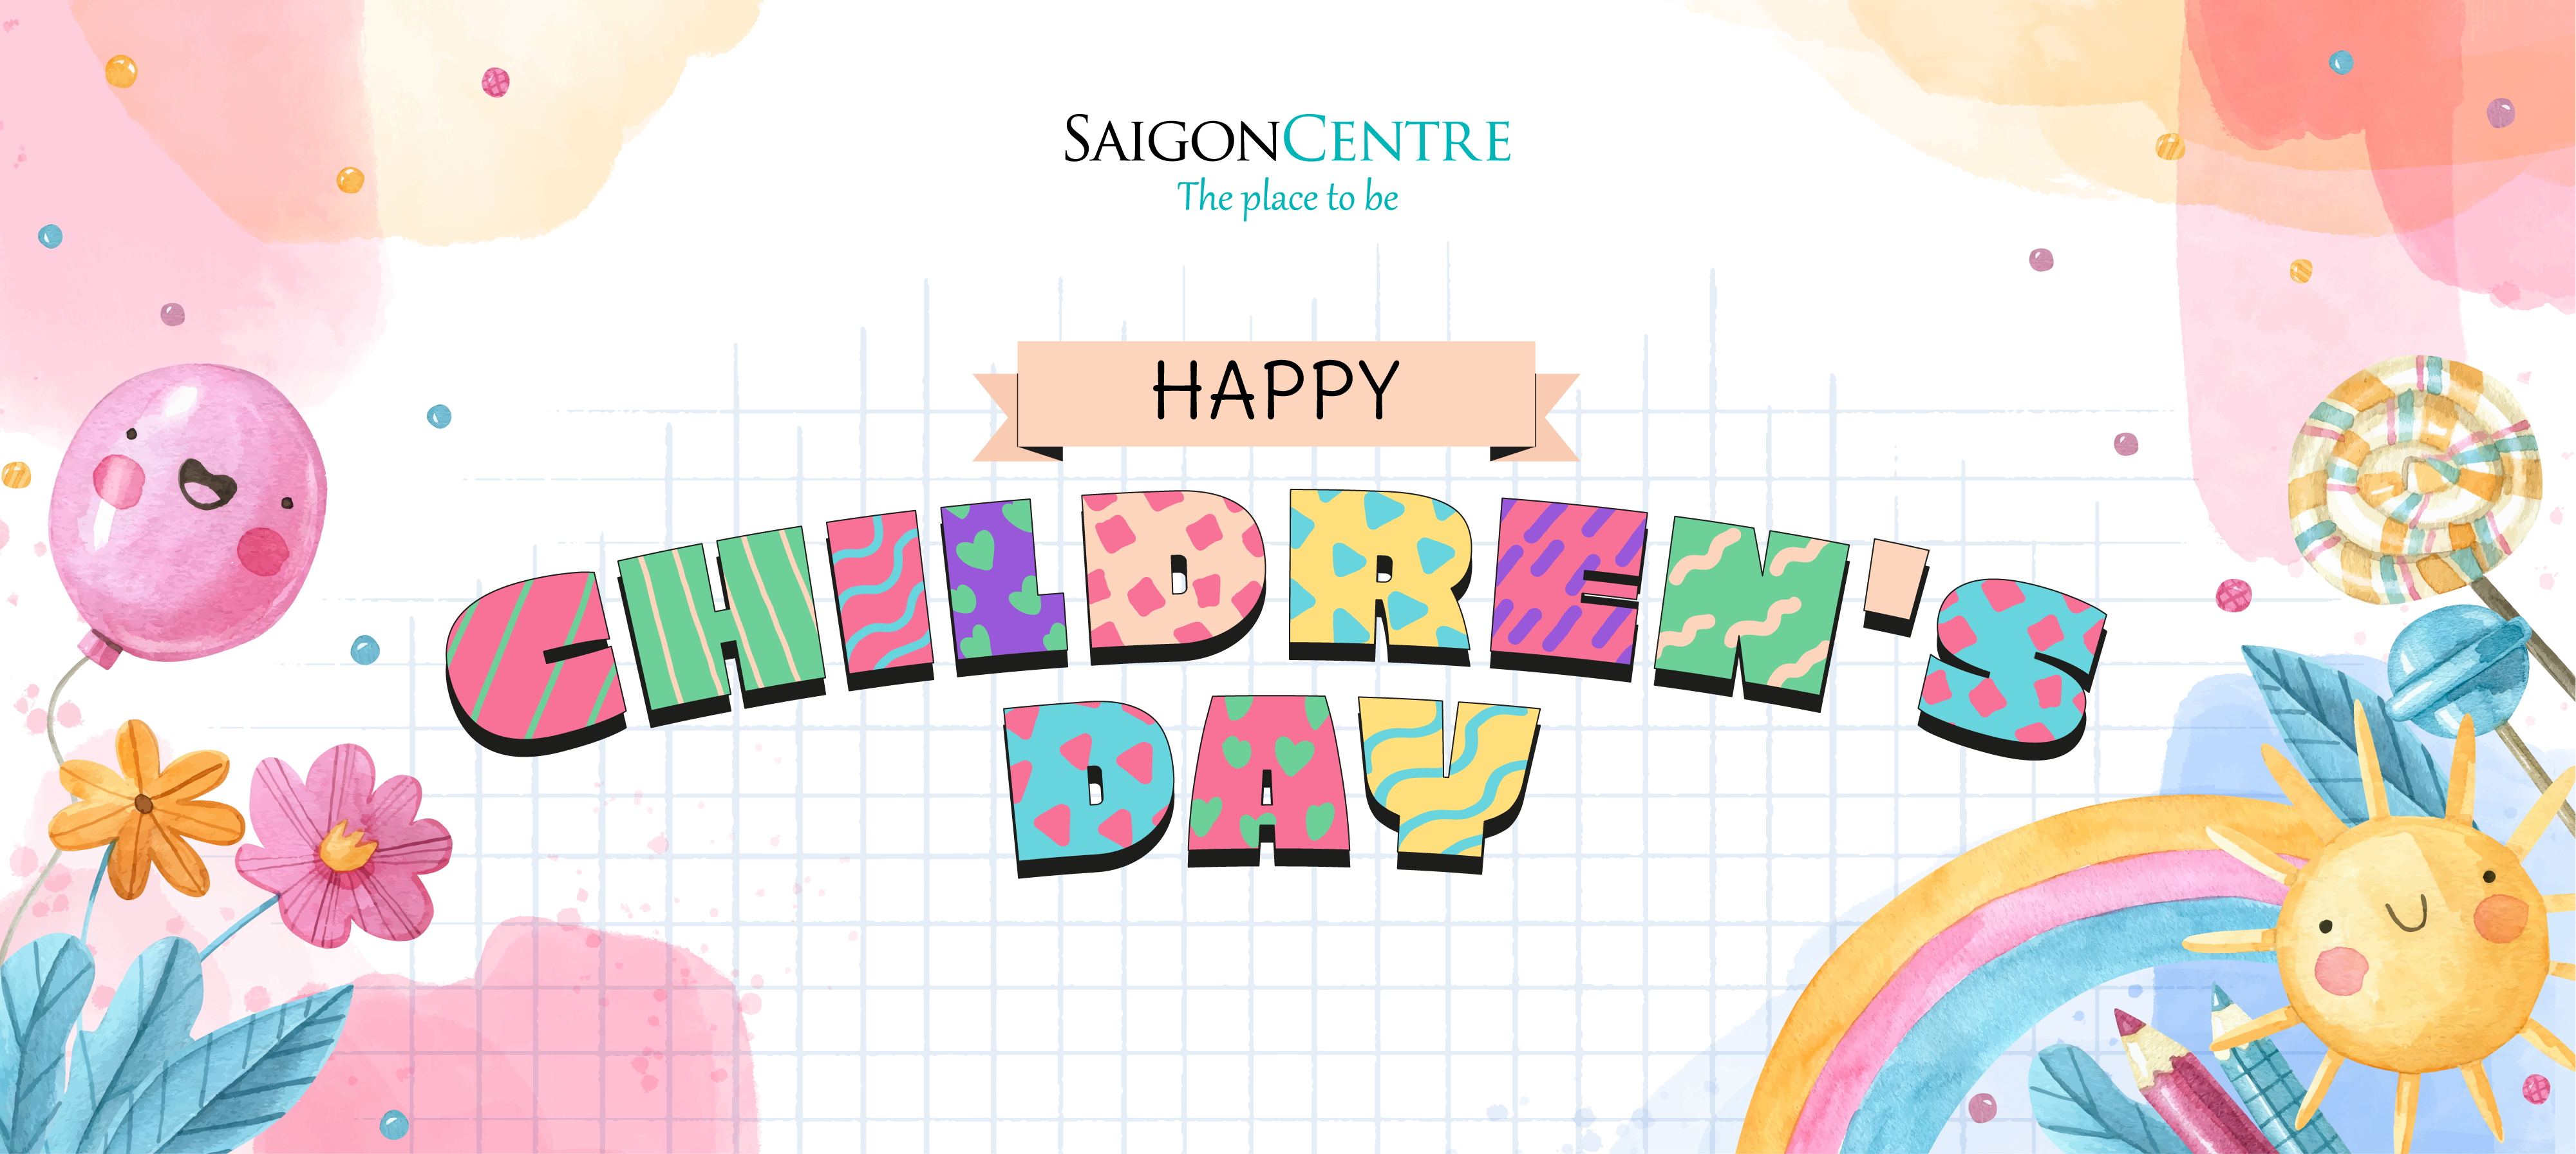 HAPPY INTERNATIONAL CHILDREN’S DAY!